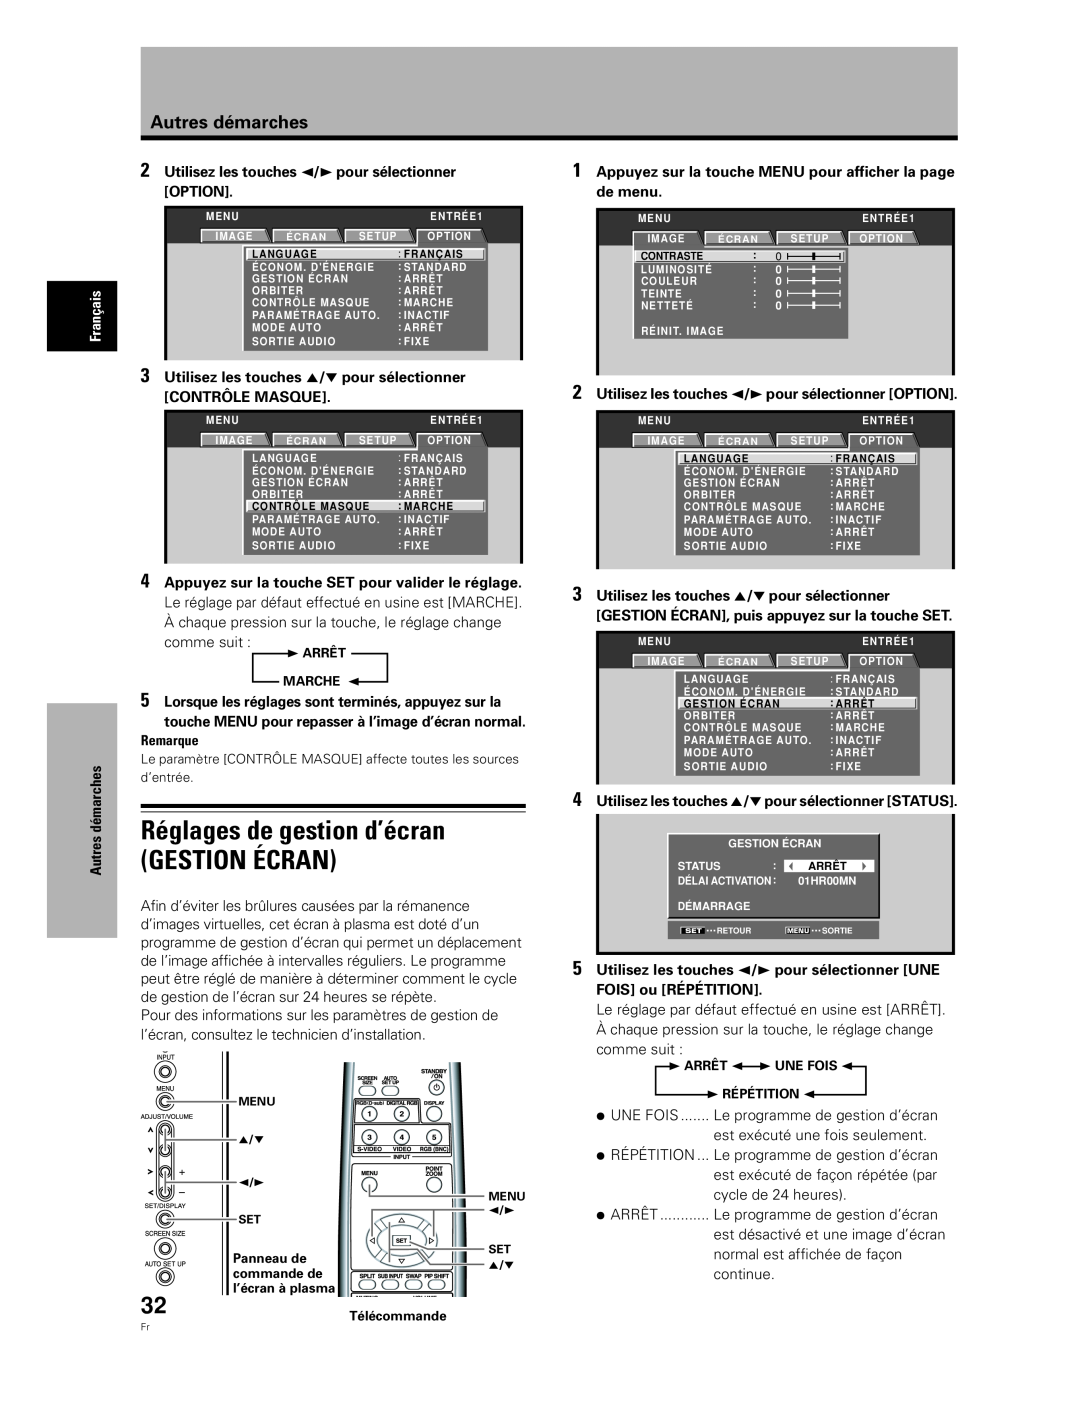 Pioneer PDA-5004 Réglages de gestion d’écran GESTION ÉCRAN, Utilisez les touches 2/3 pour sélectionner, Option, de menu 